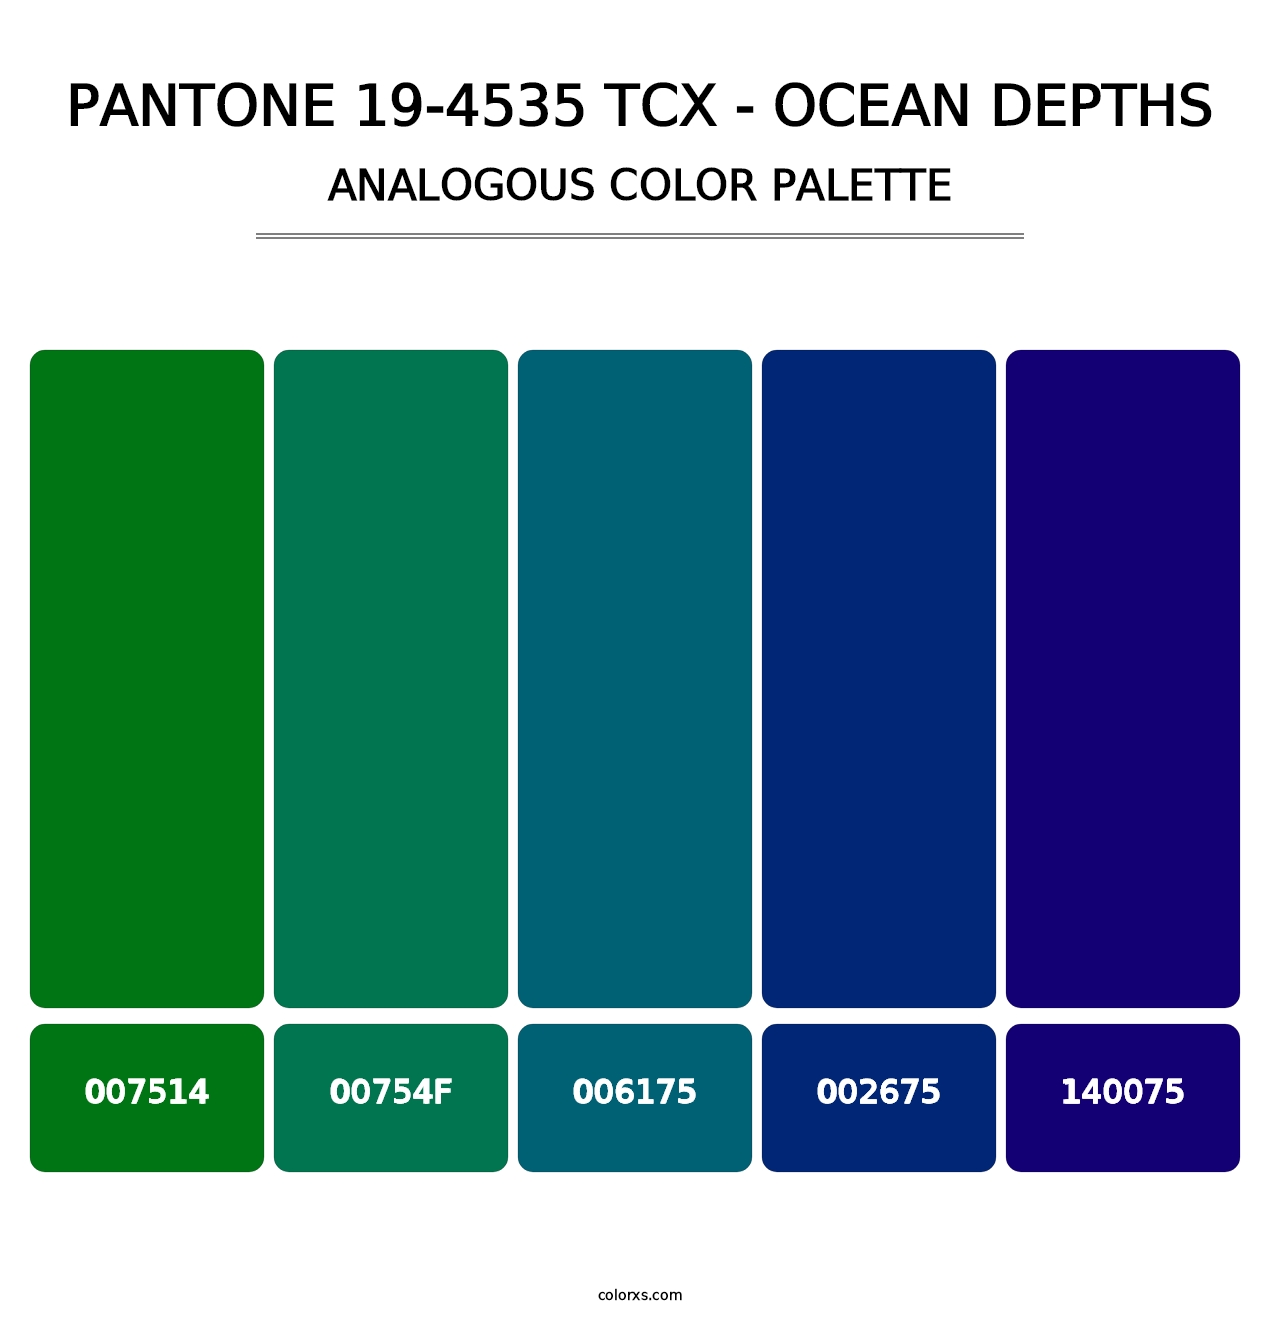 PANTONE 19-4535 TCX - Ocean Depths - Analogous Color Palette